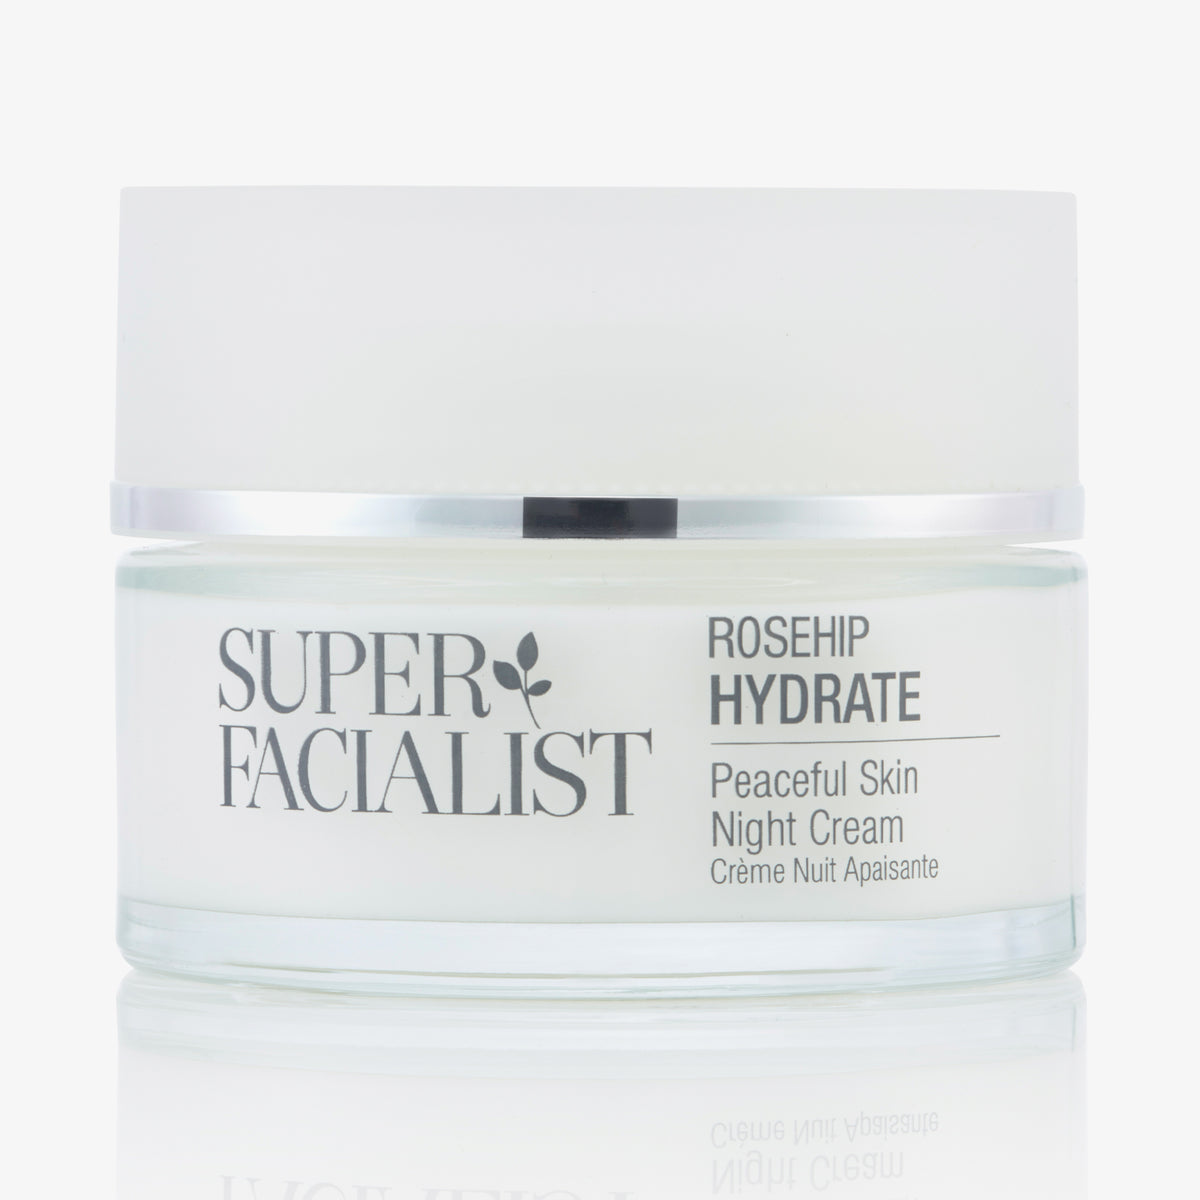 Super Facialist | Rose Hydrate Peaceful Skin Night Cream